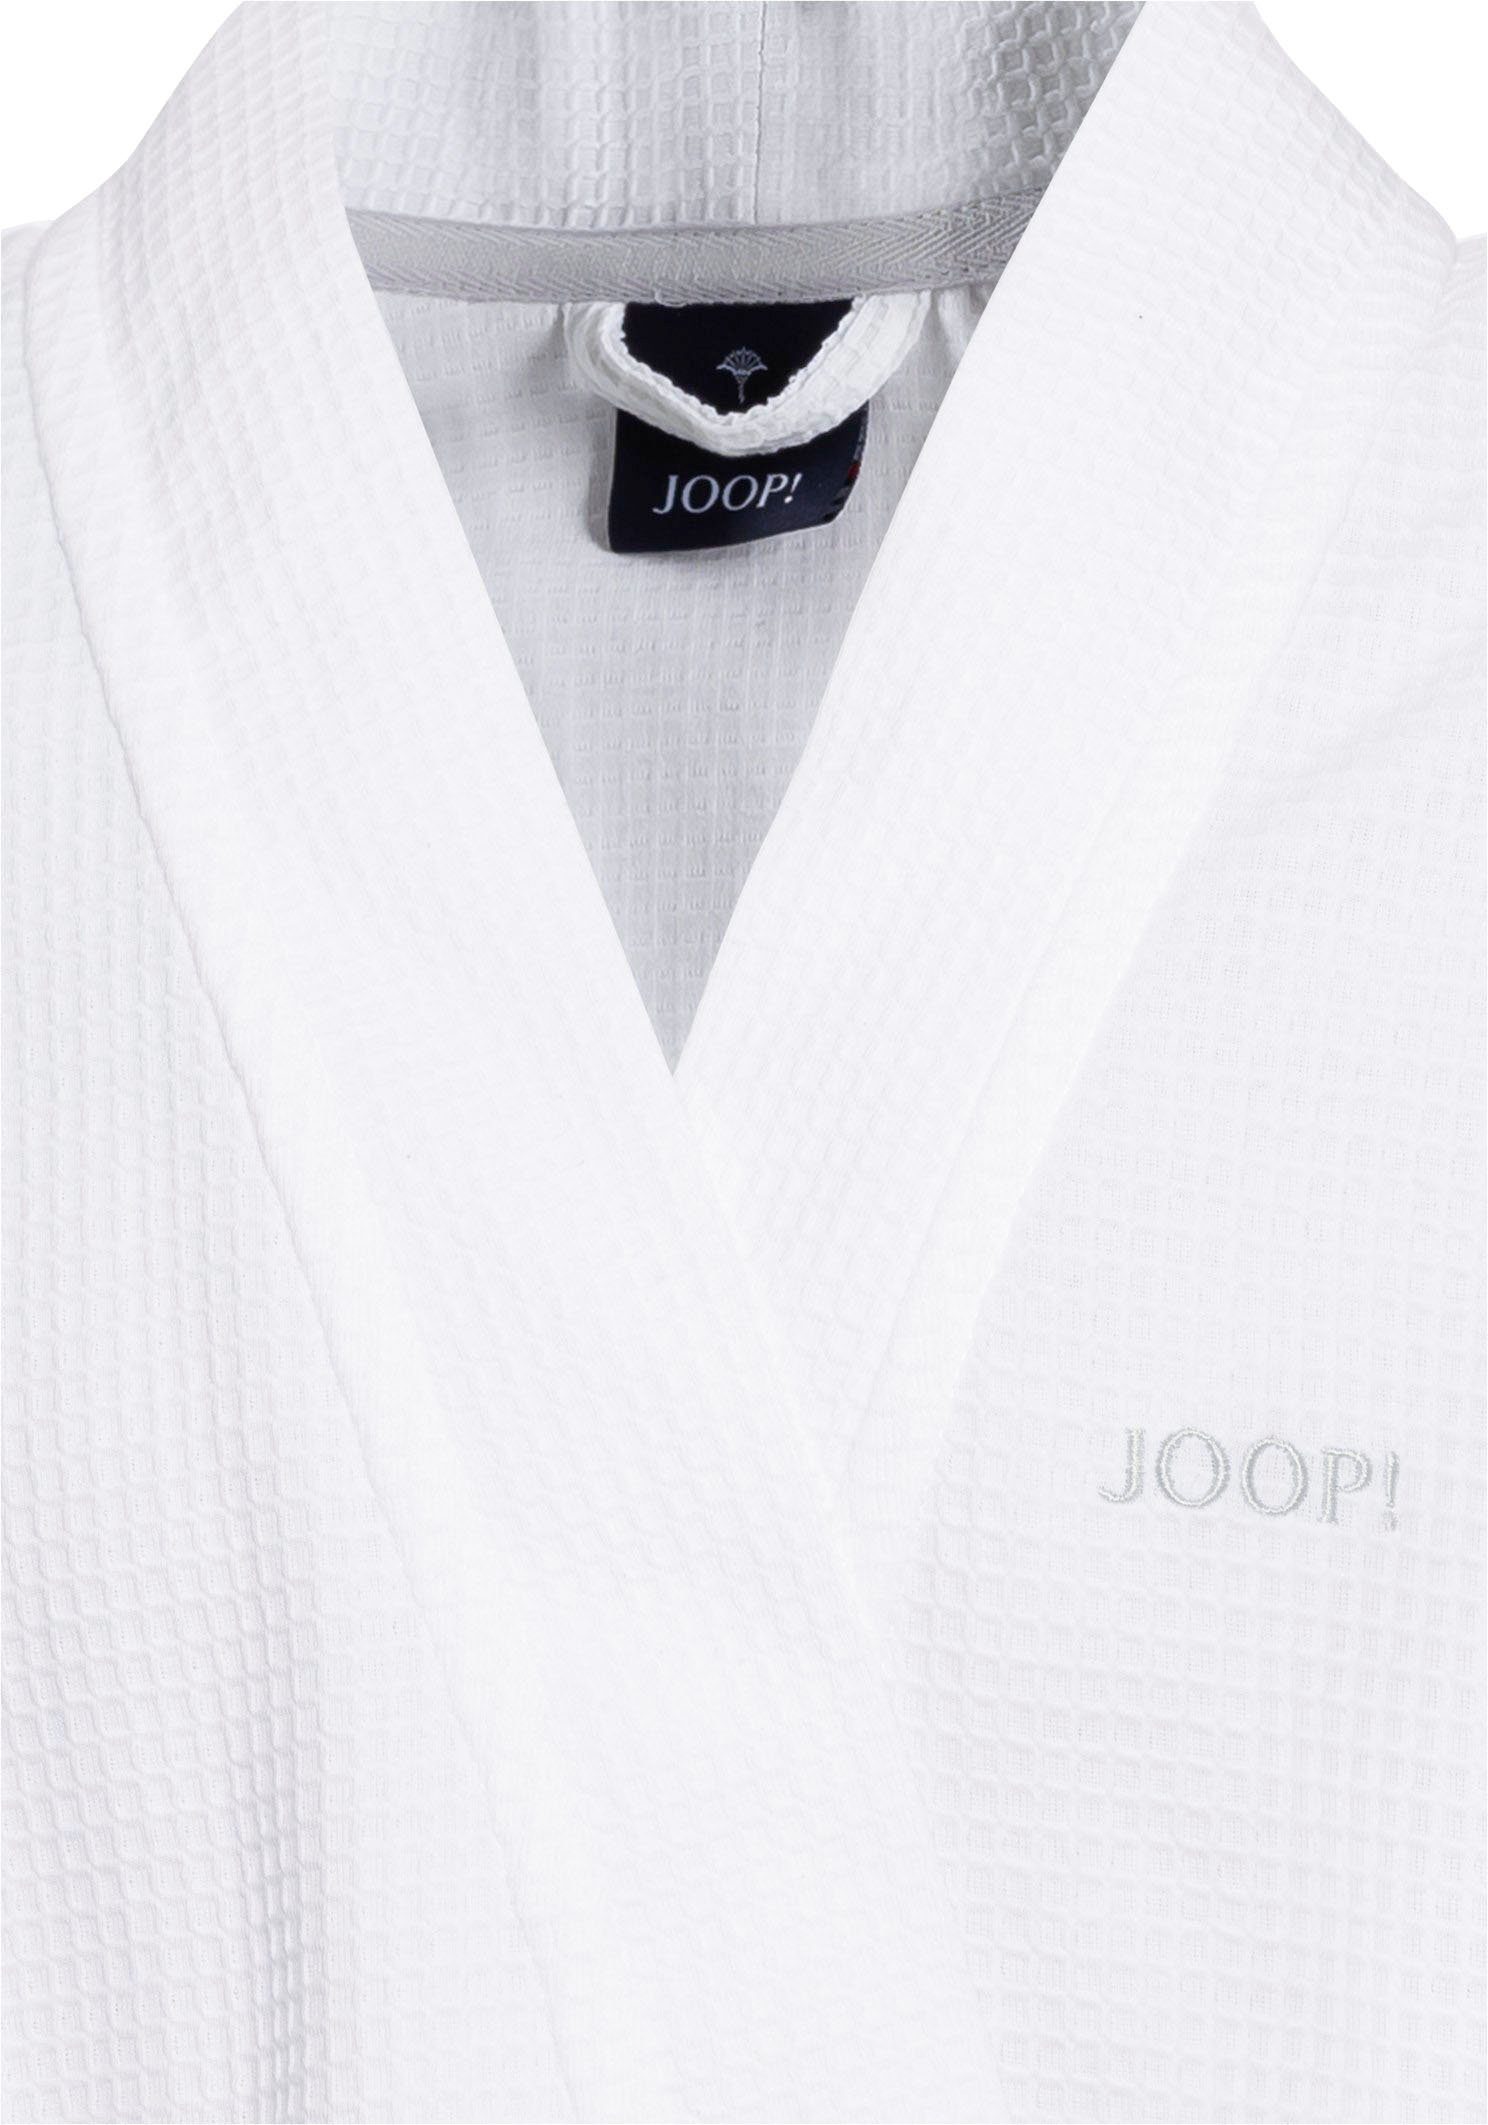 Joop! Kimono-Kragen, Kurzform, Herrenbademantel Logo-Stick kontrastigem Baumwolle, UNI-PIQUÉ, mit Gürtel, weiß